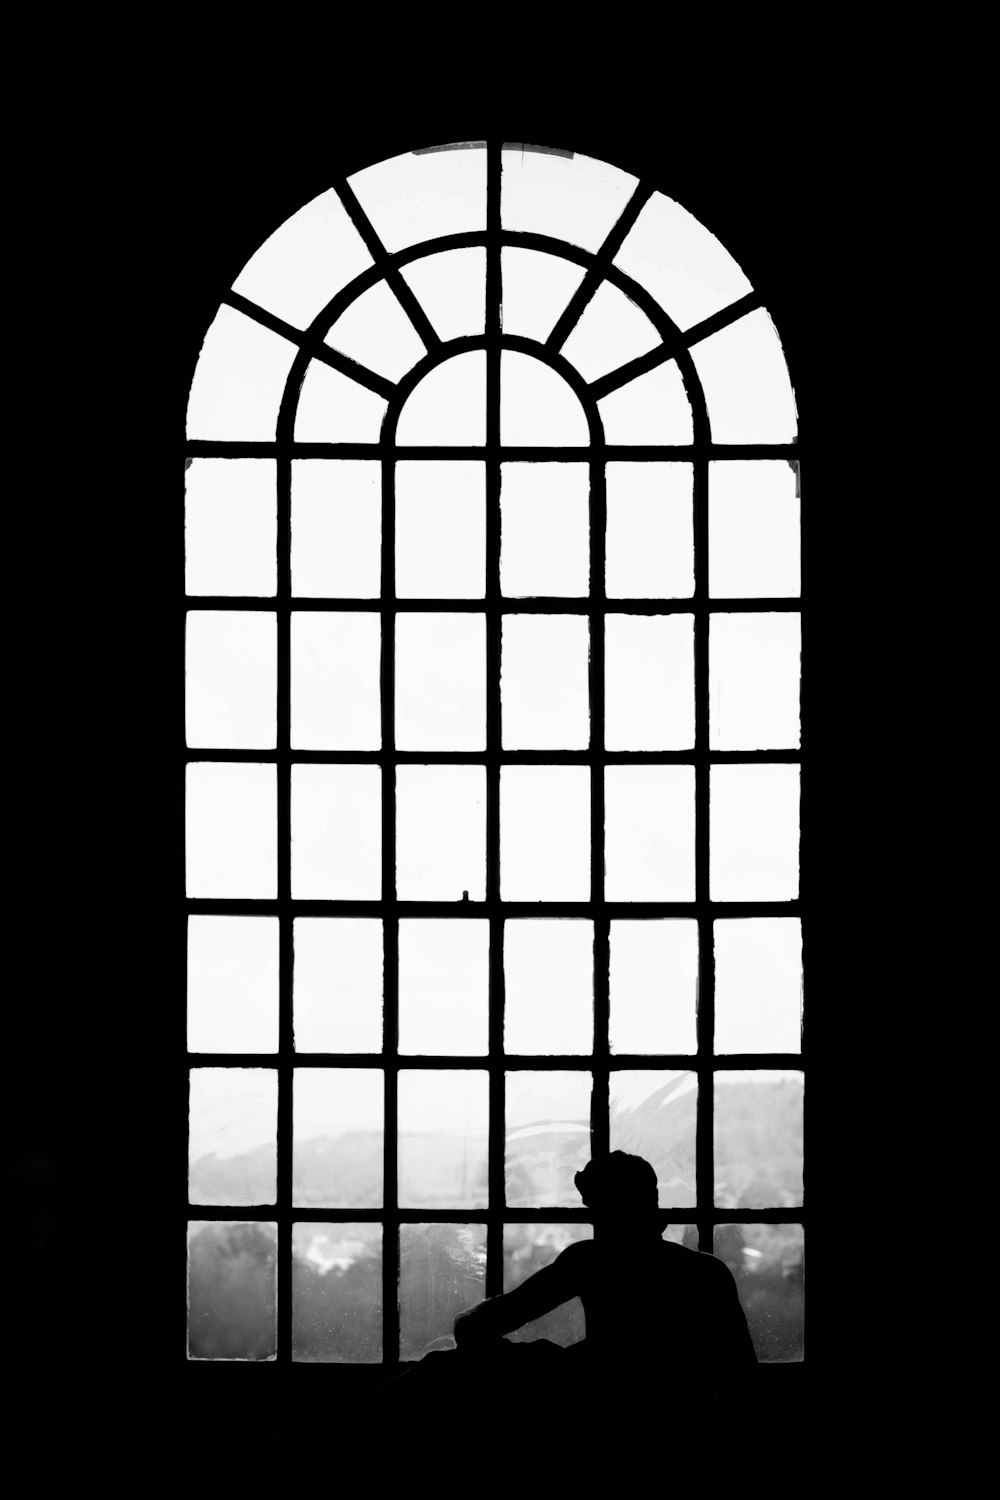 uma pessoa sentada em uma janela